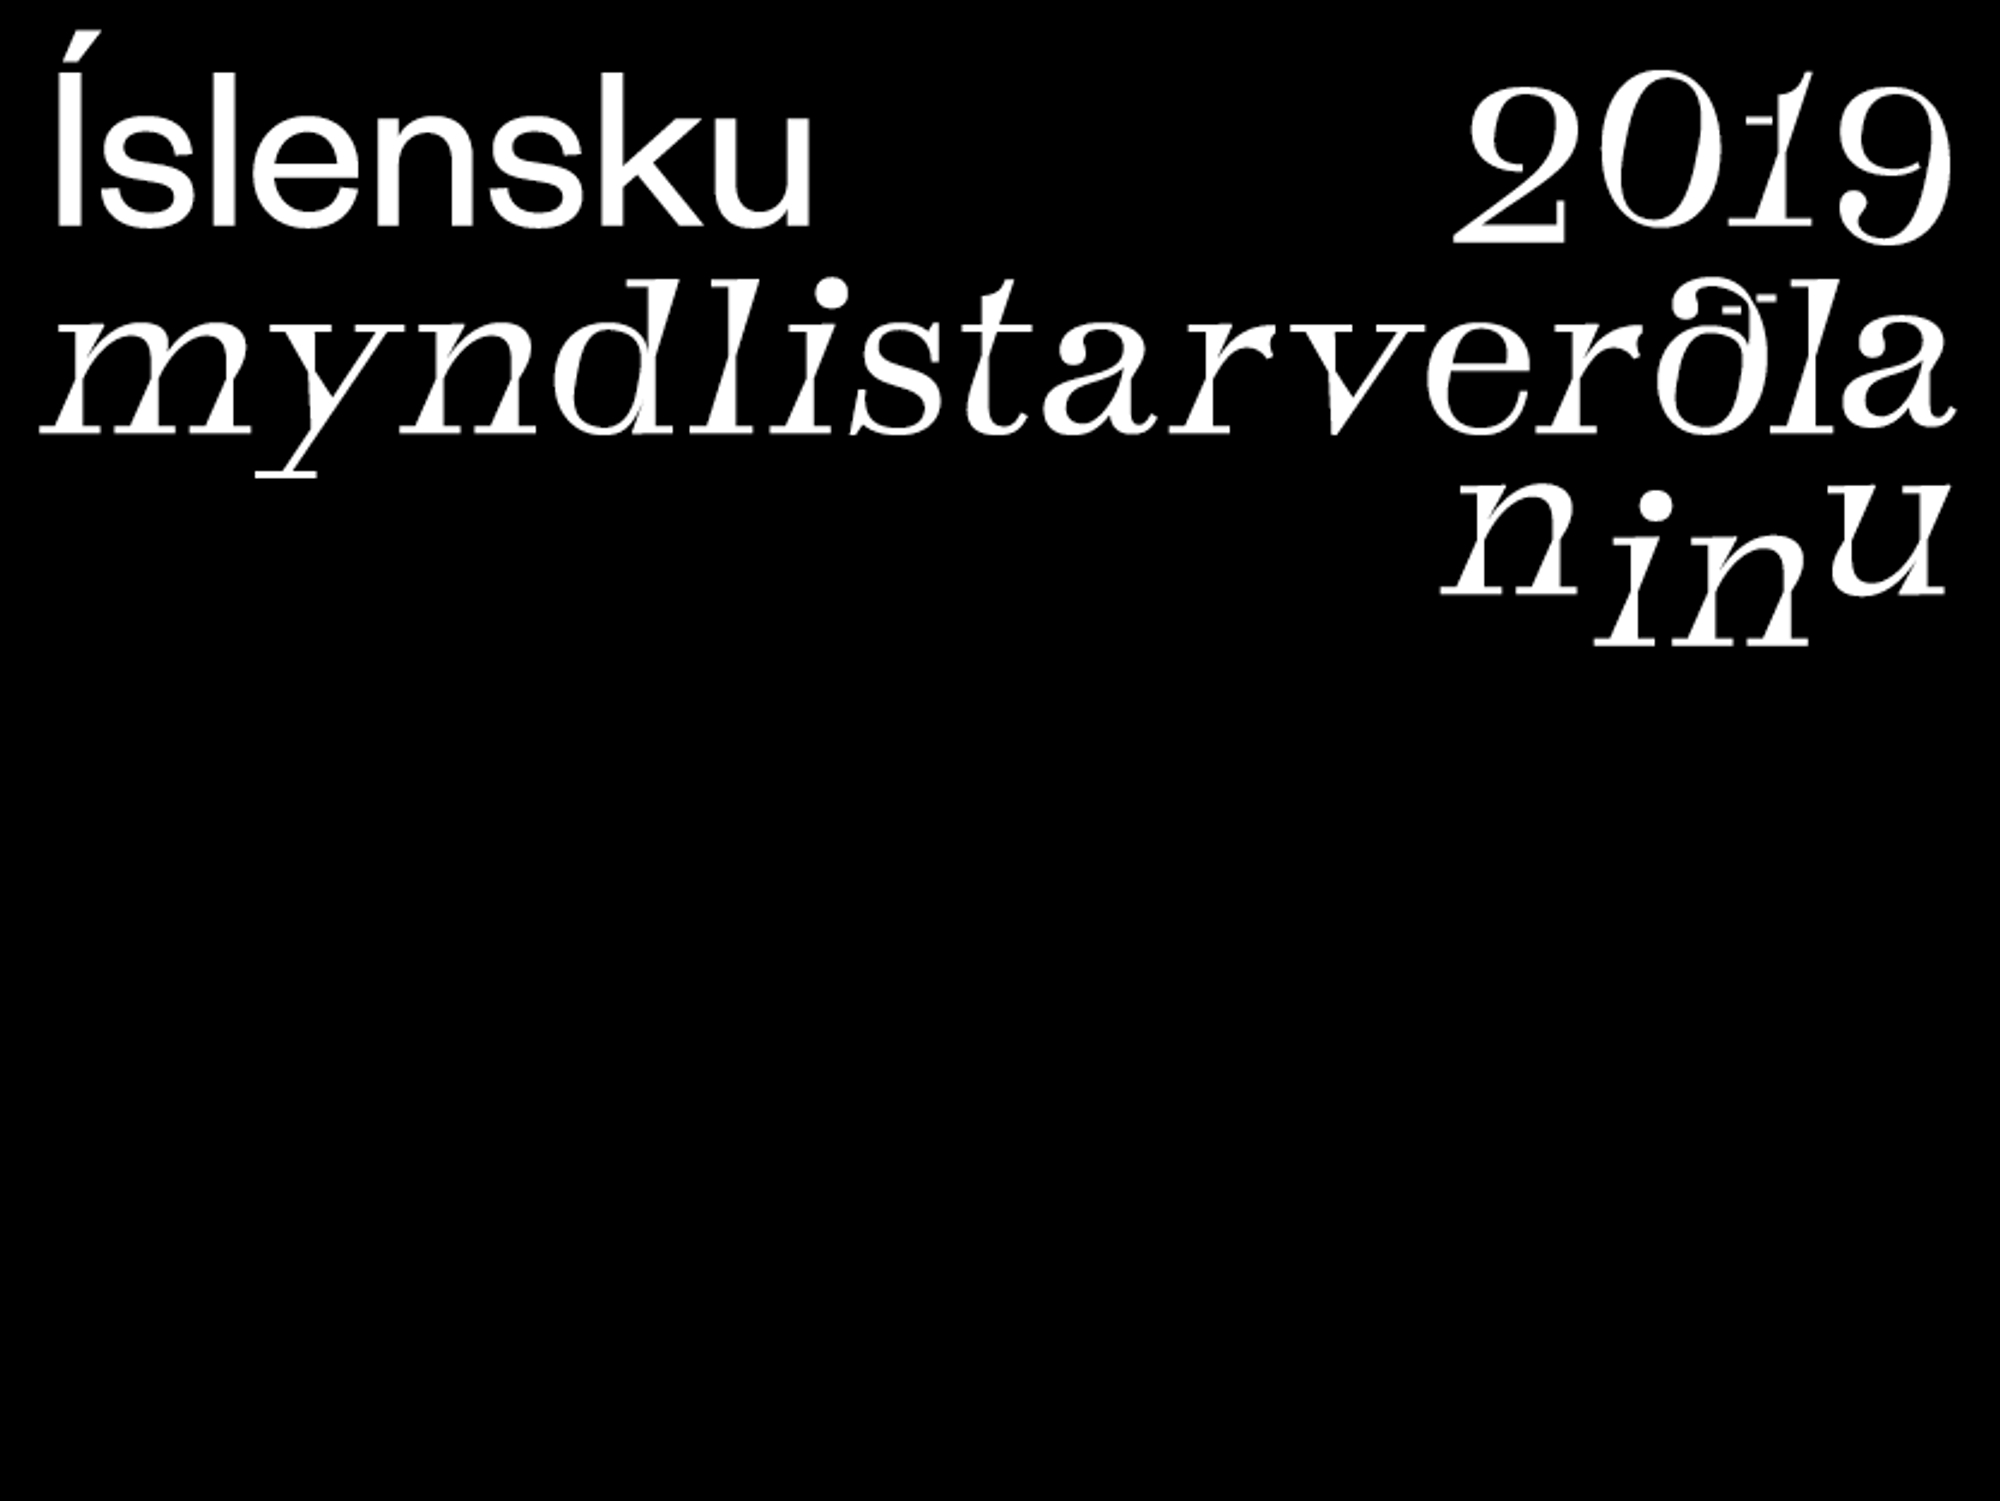 Íslensku myndlistarverðlaunin 2019 - merki